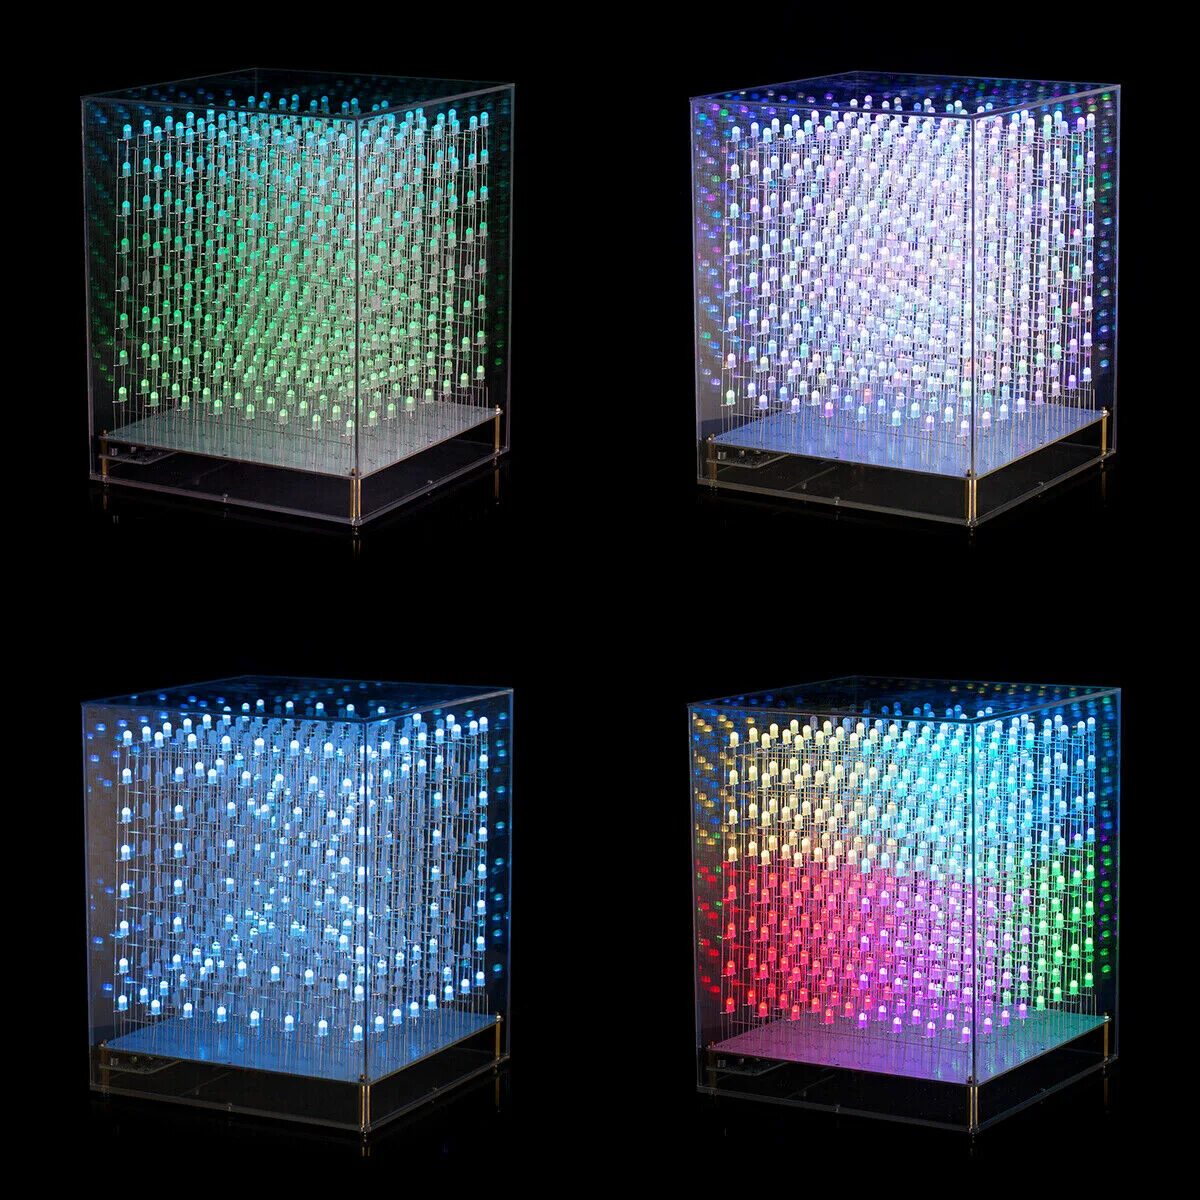 Led cube. Led Cube 8x8x8. 3d led куб RGB зеркальный. Гиперкуб светодиодный. Куб из светодиодов 8x8.